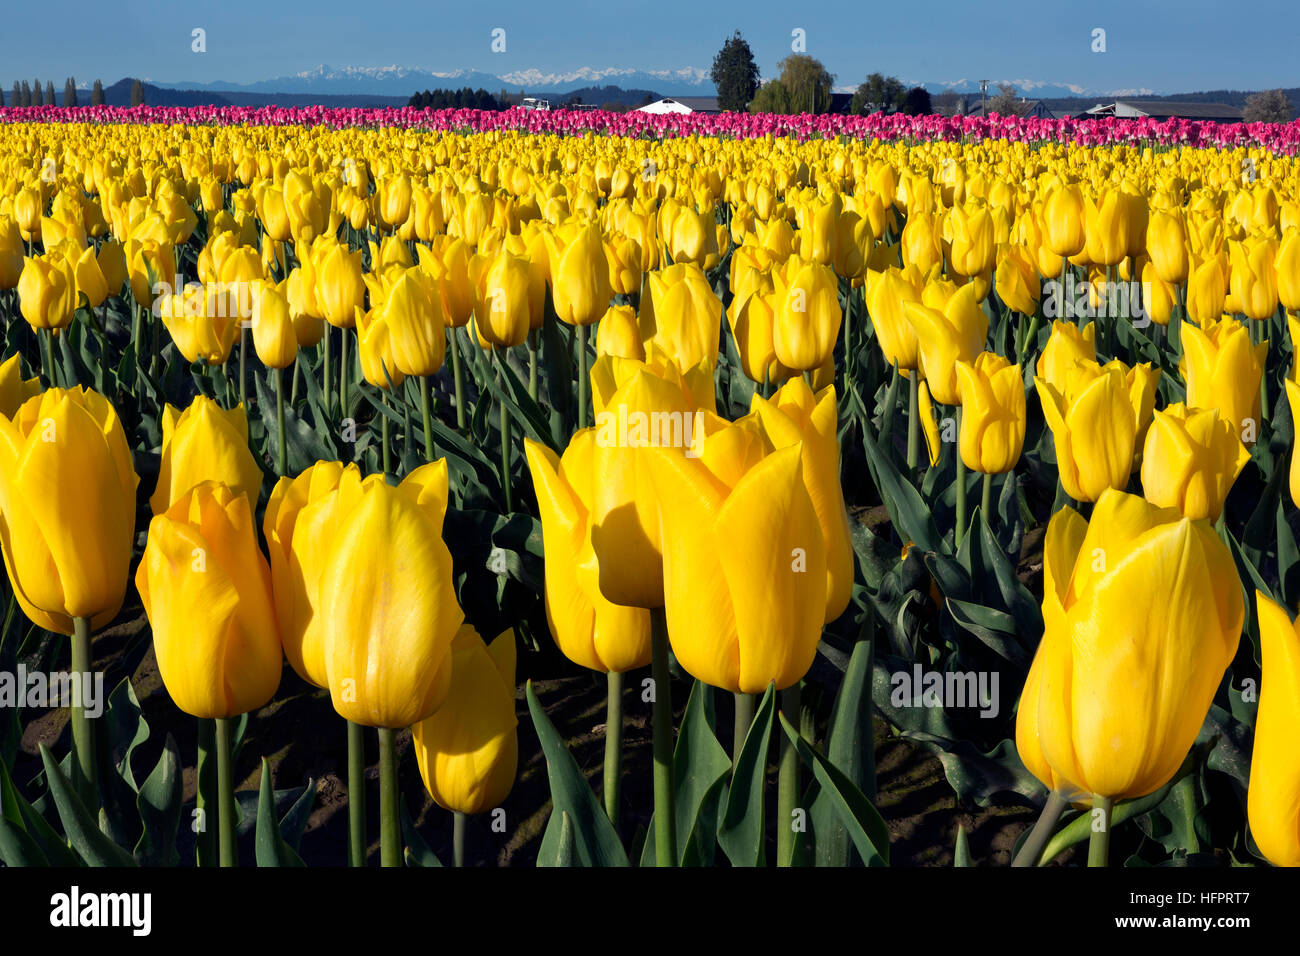 WA13052-00...WASHINGTON - tulipes jaunes poussant dans un champ dans l'ampoule commercial du delta de la rivière Skagit, près de Mount Vernon. Banque D'Images